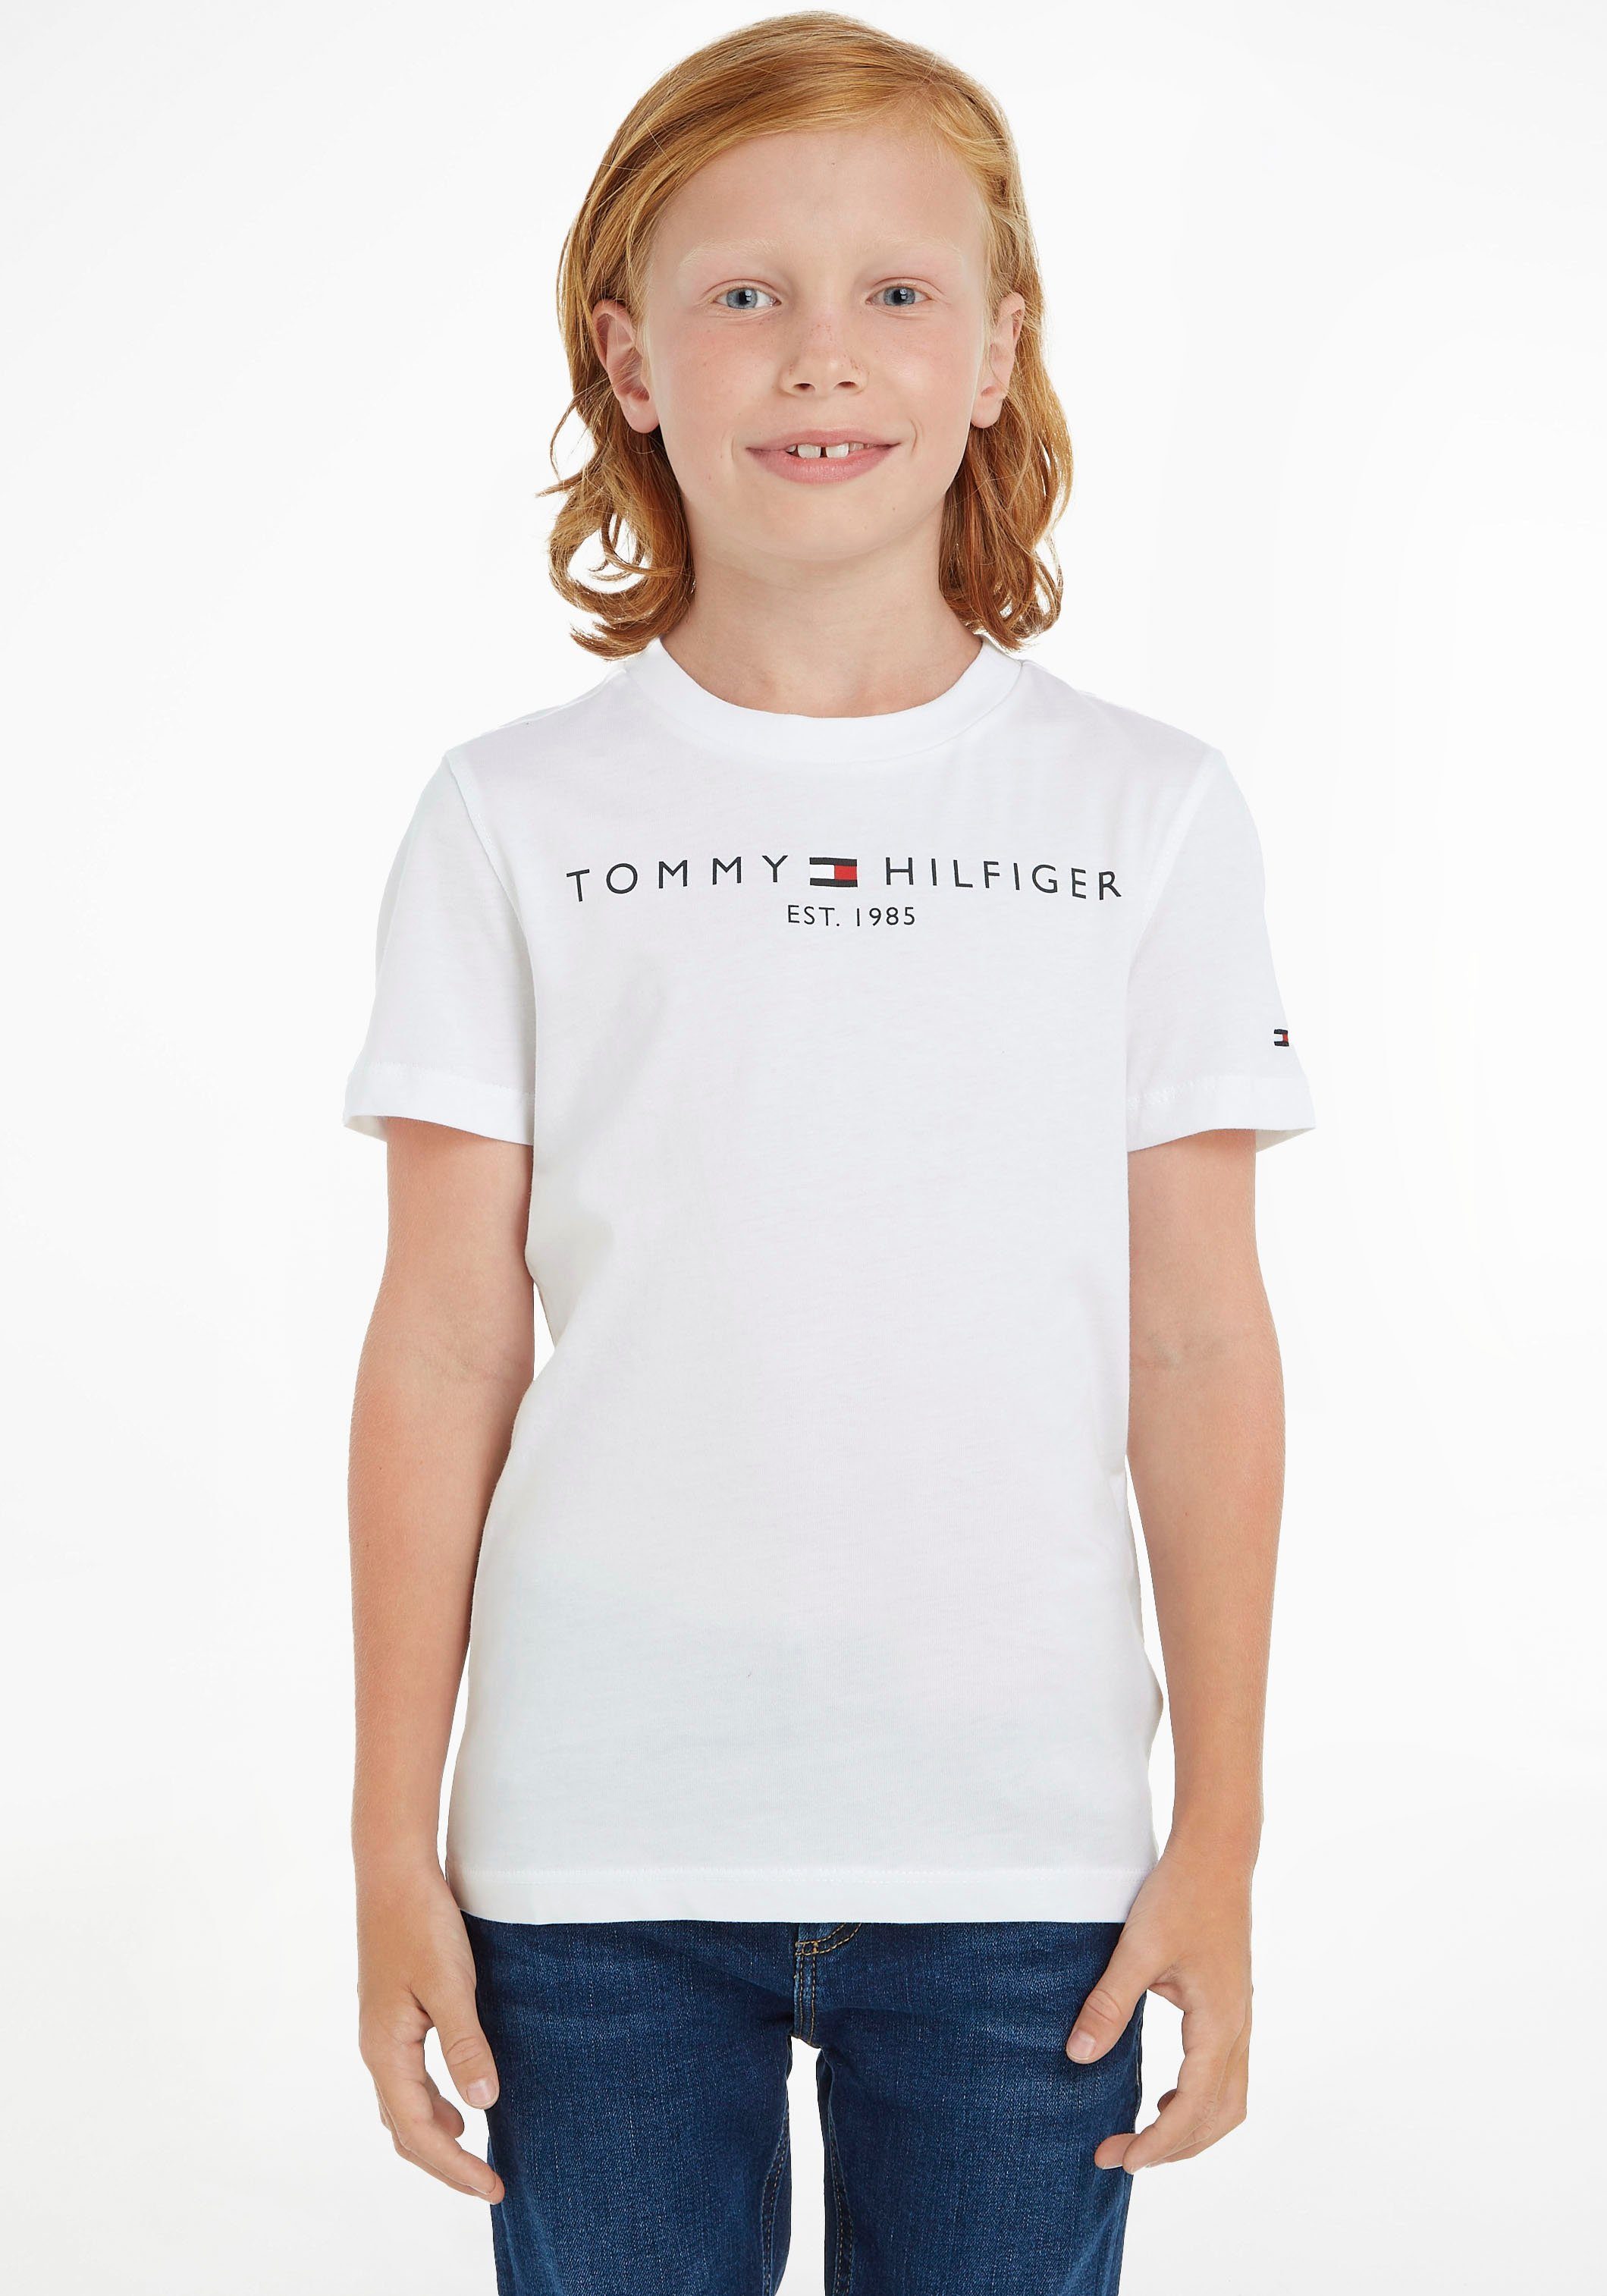 Tommy Hilfiger T-Shirt ESSENTIAL TEE Junior und Mädchen MiniMe,für Kinder Jungen Kids